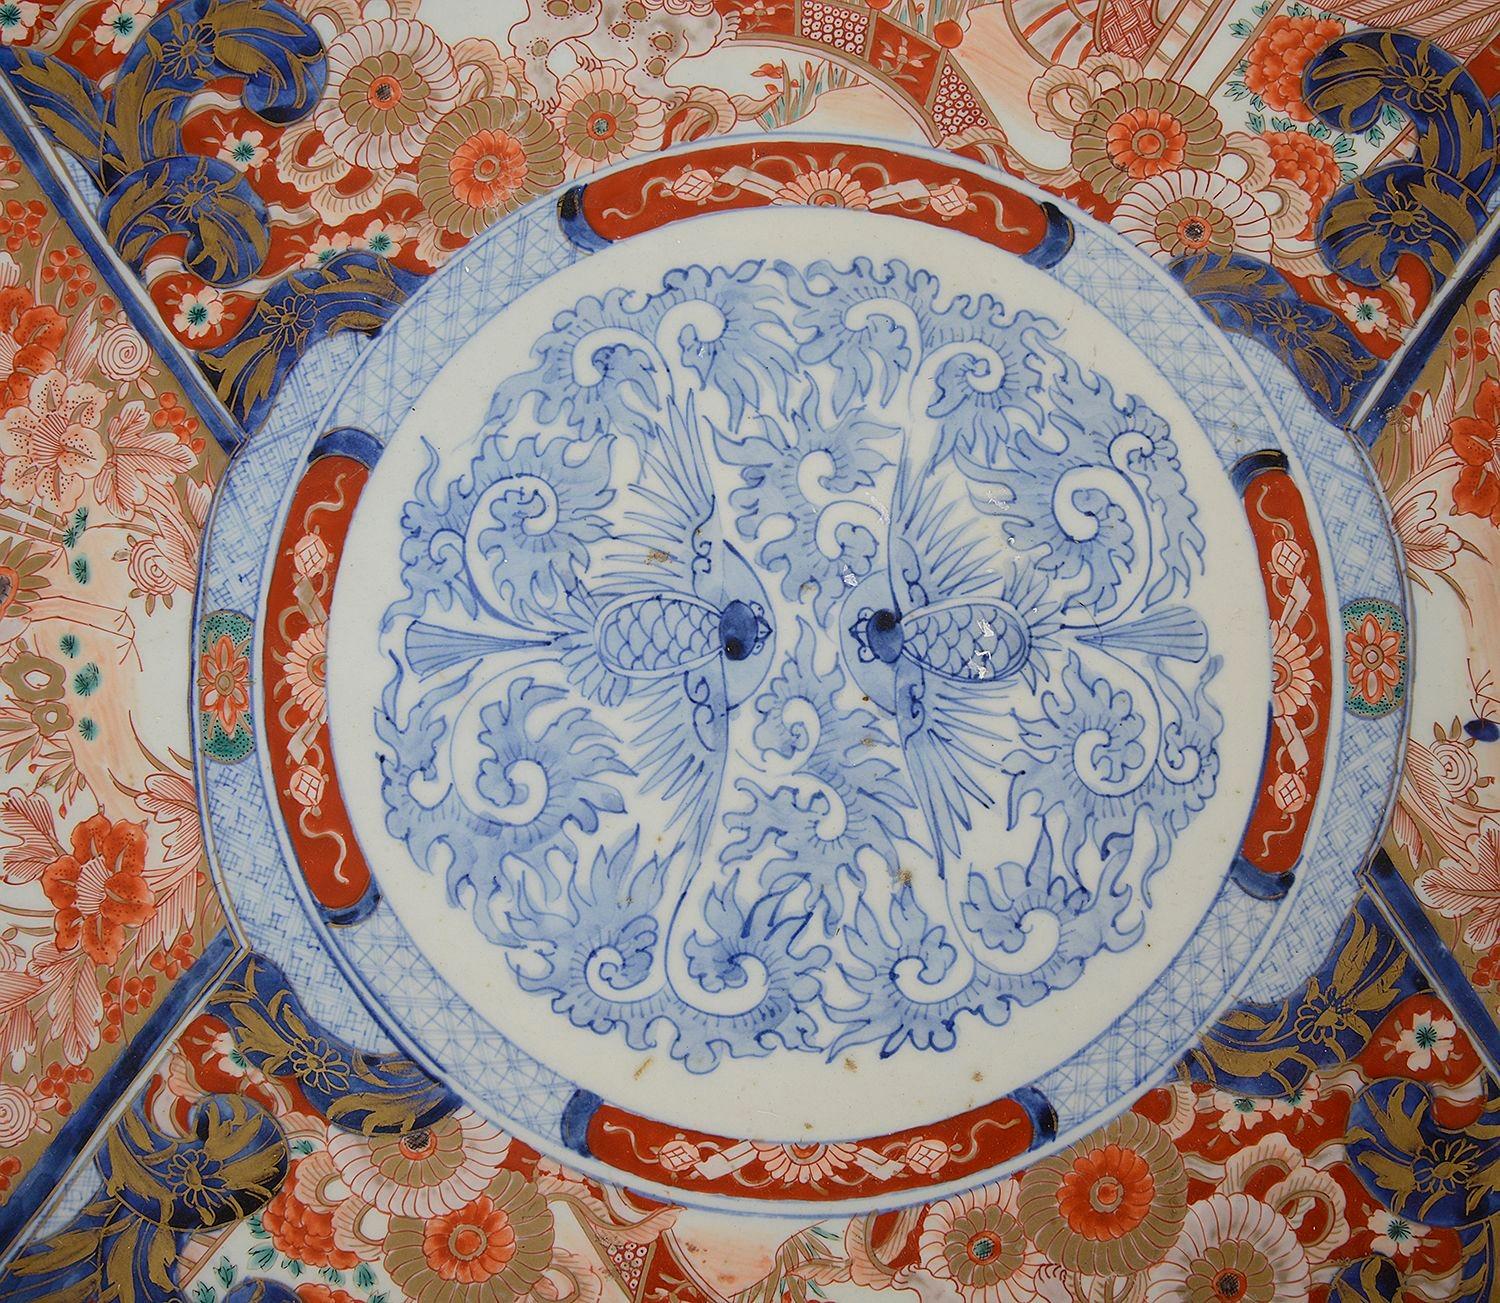 Ein hochwertiges japanisches Imari-Porzellan-Ladegerät aus dem späten 19. Jahrhundert mit handgemalten Fächern, auf denen exotische Vögel, Blumen und Blätter abgebildet sind.

Los 76 G9332/21 UTKN